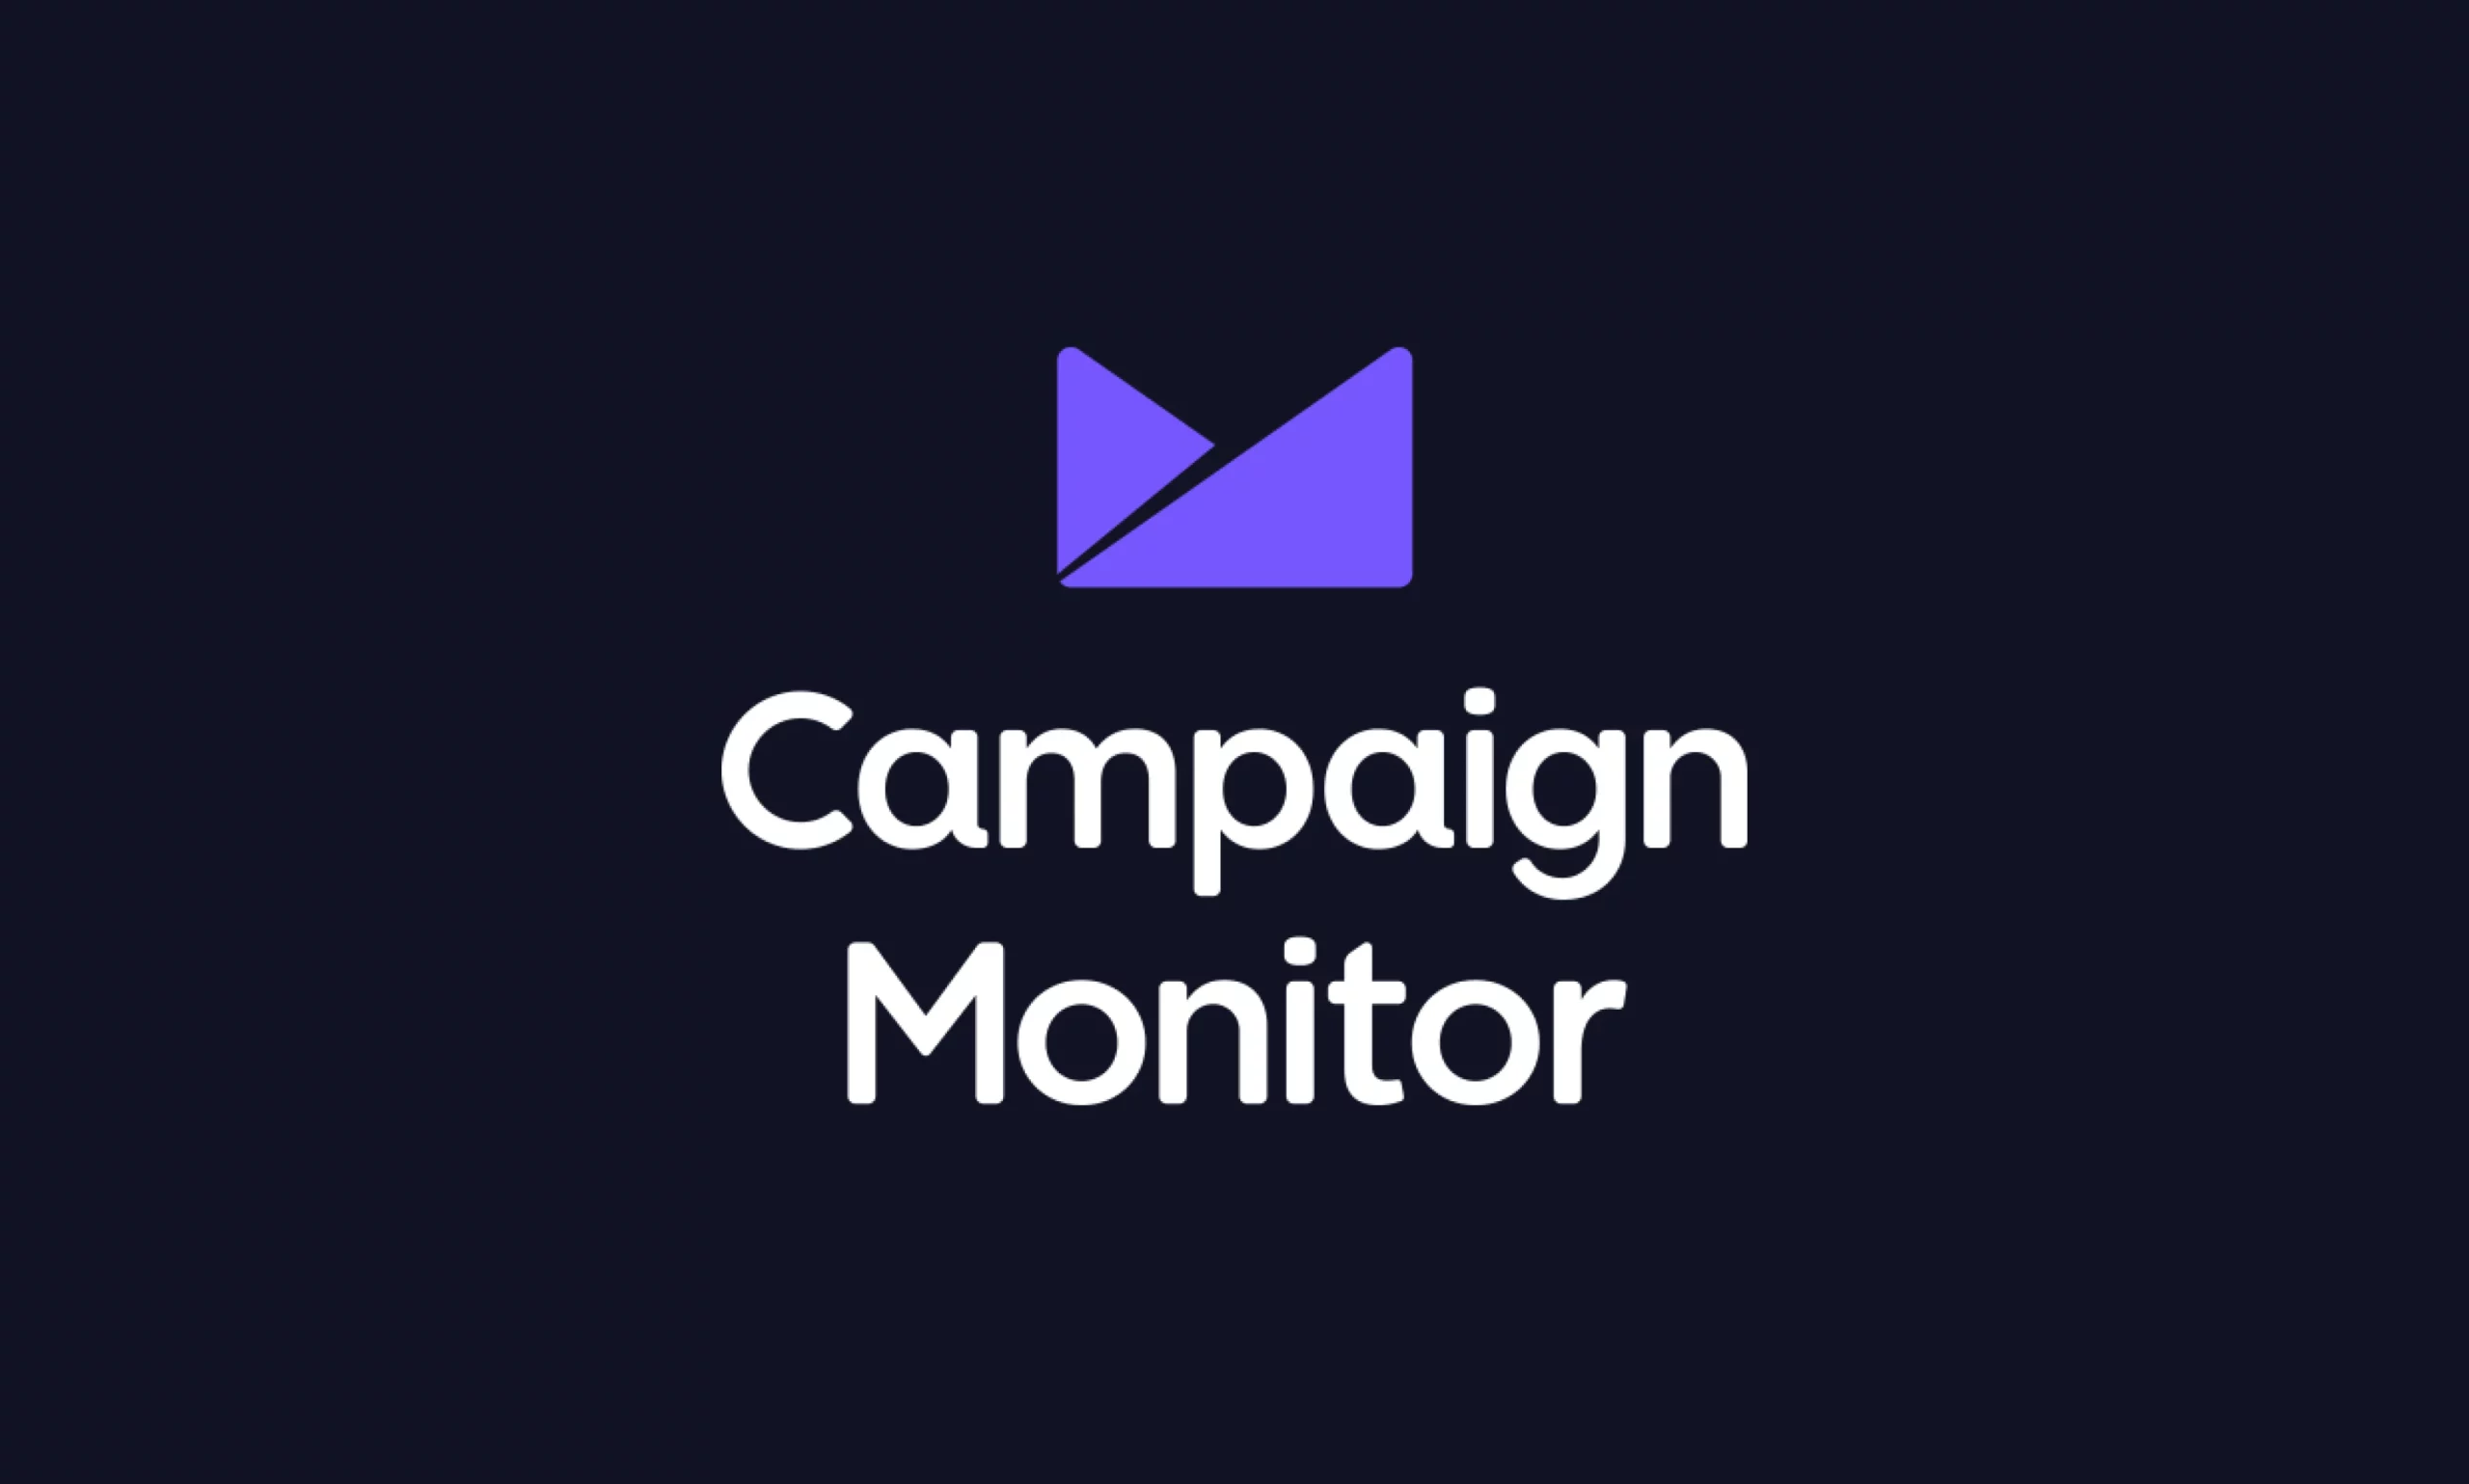 Campaign Monitor Addon